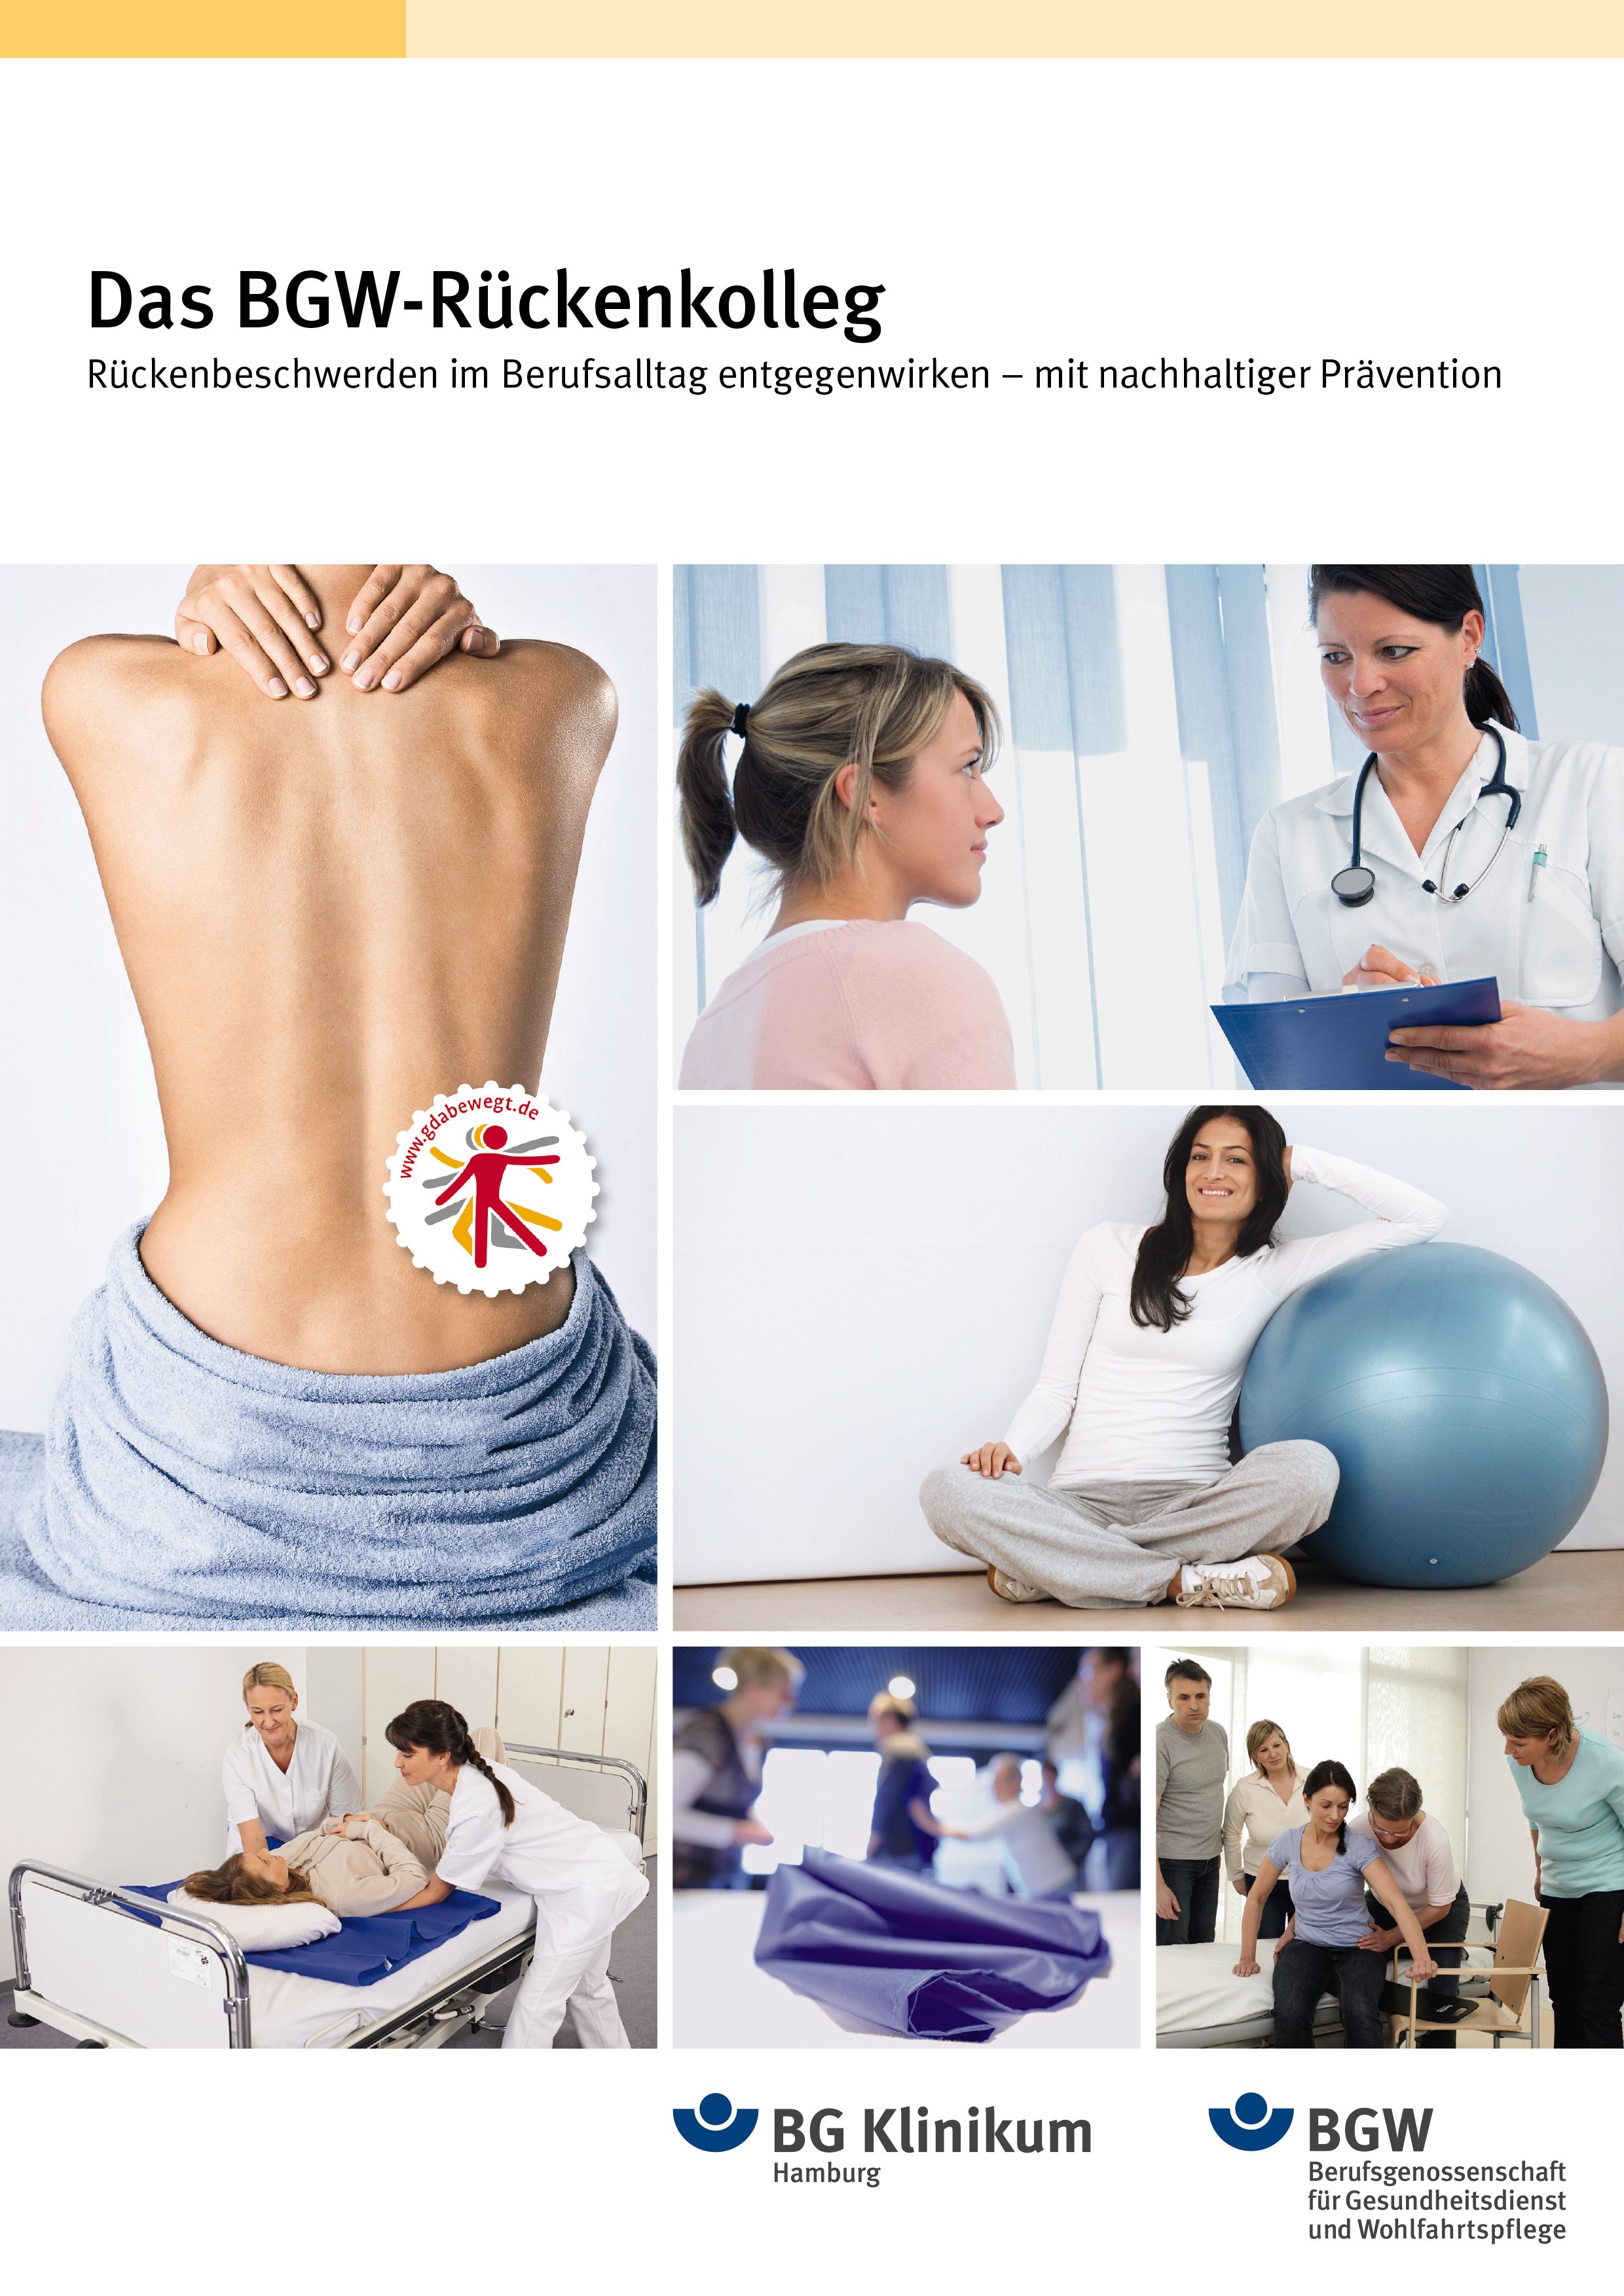 Titelbild der Broschüre "Das BGW-Rückenkolleg. Rückenbeschwerden im Berufsalltag entgegenwirken - mit nachhaltiger Prävention"